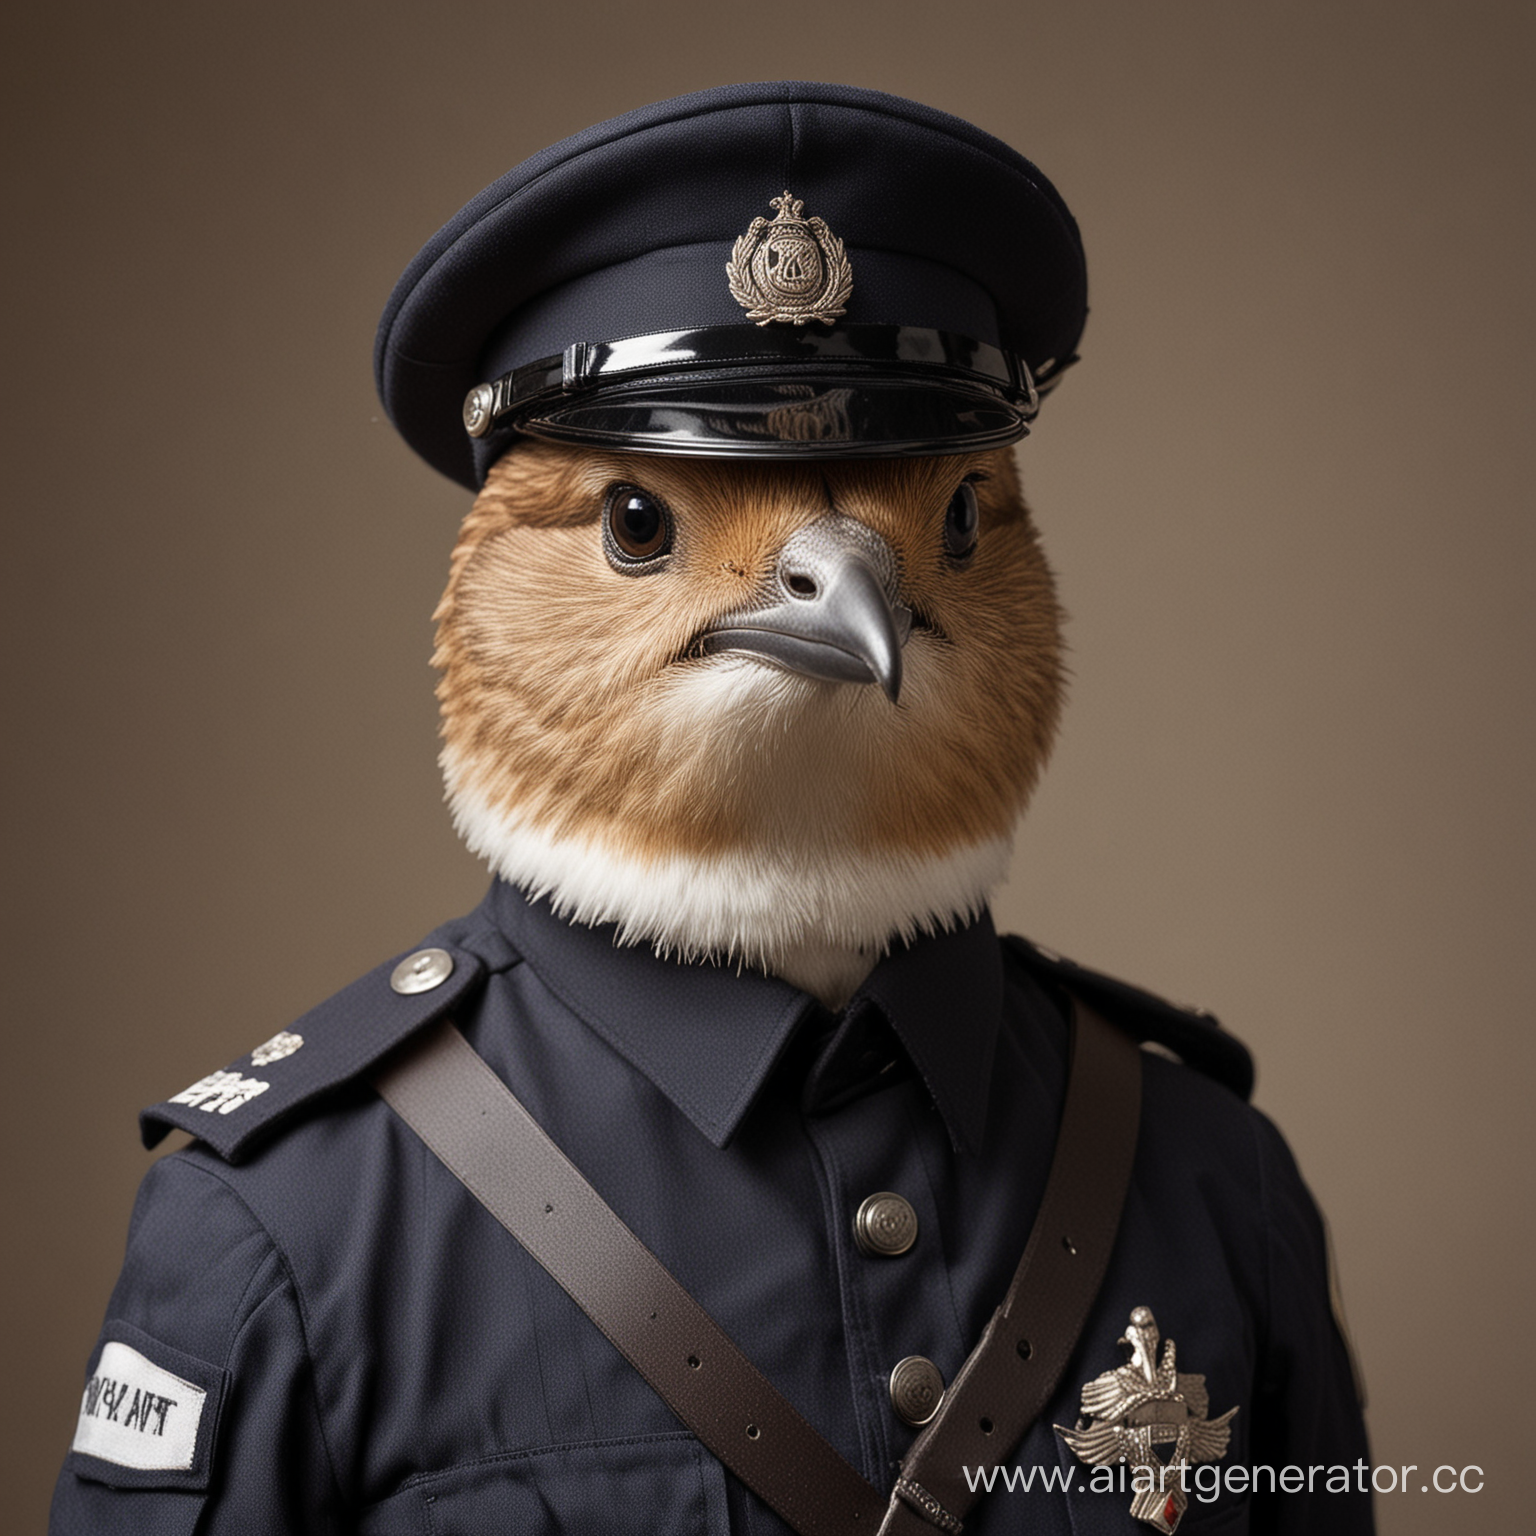 a swift bird in a policeman's uniform